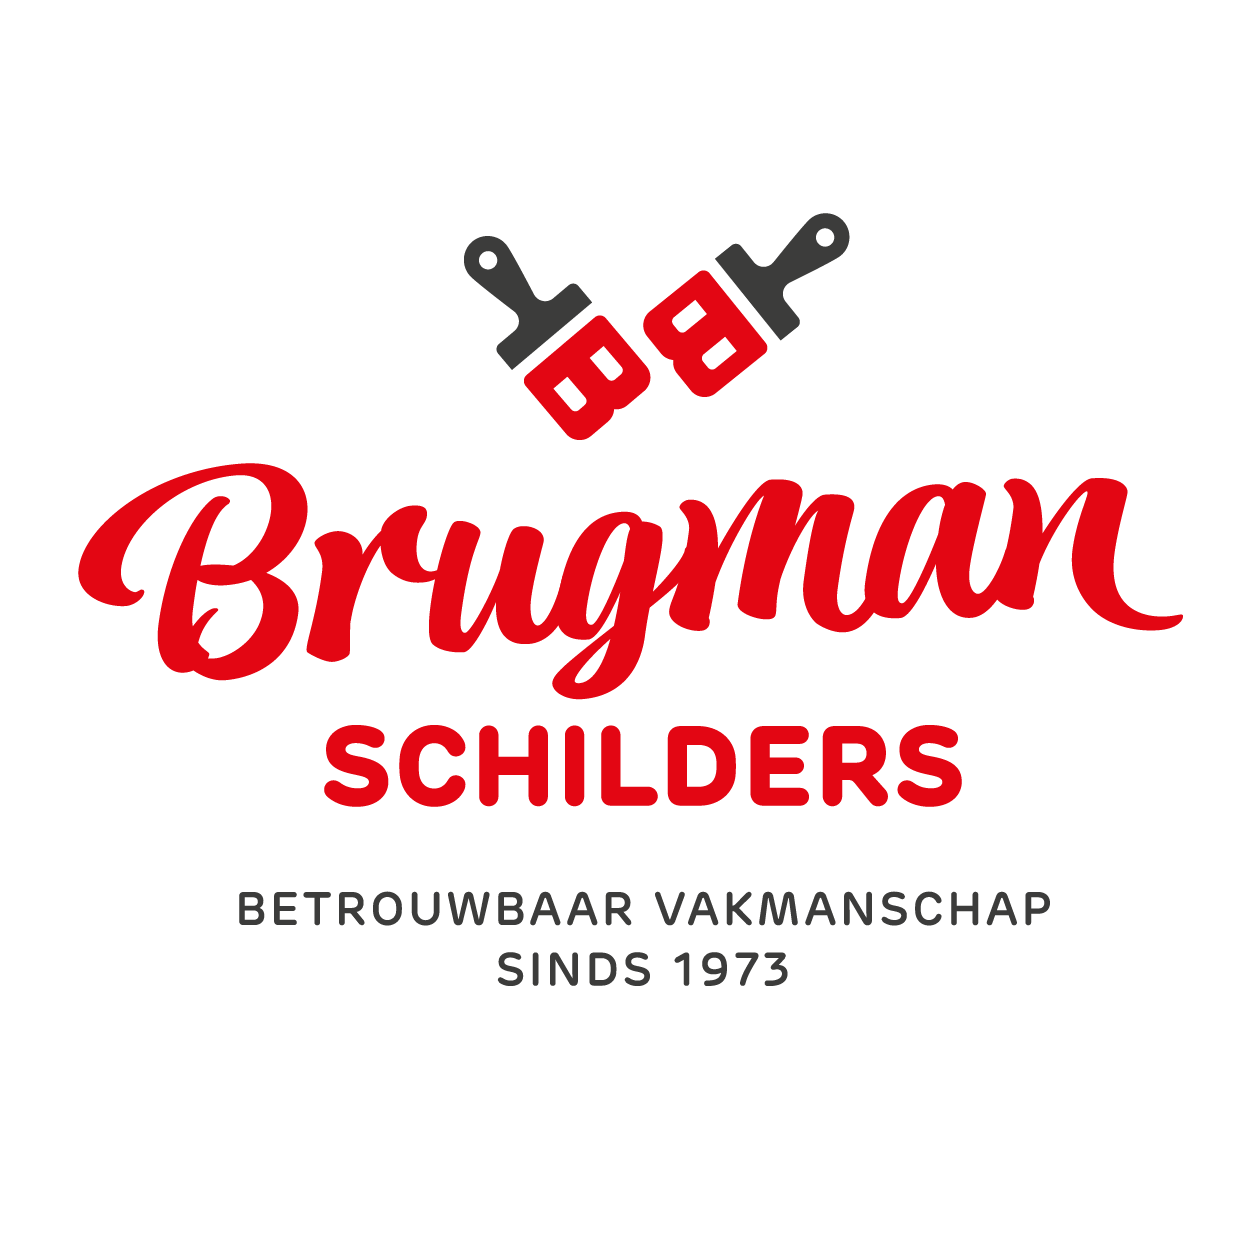 Brugman Schilders